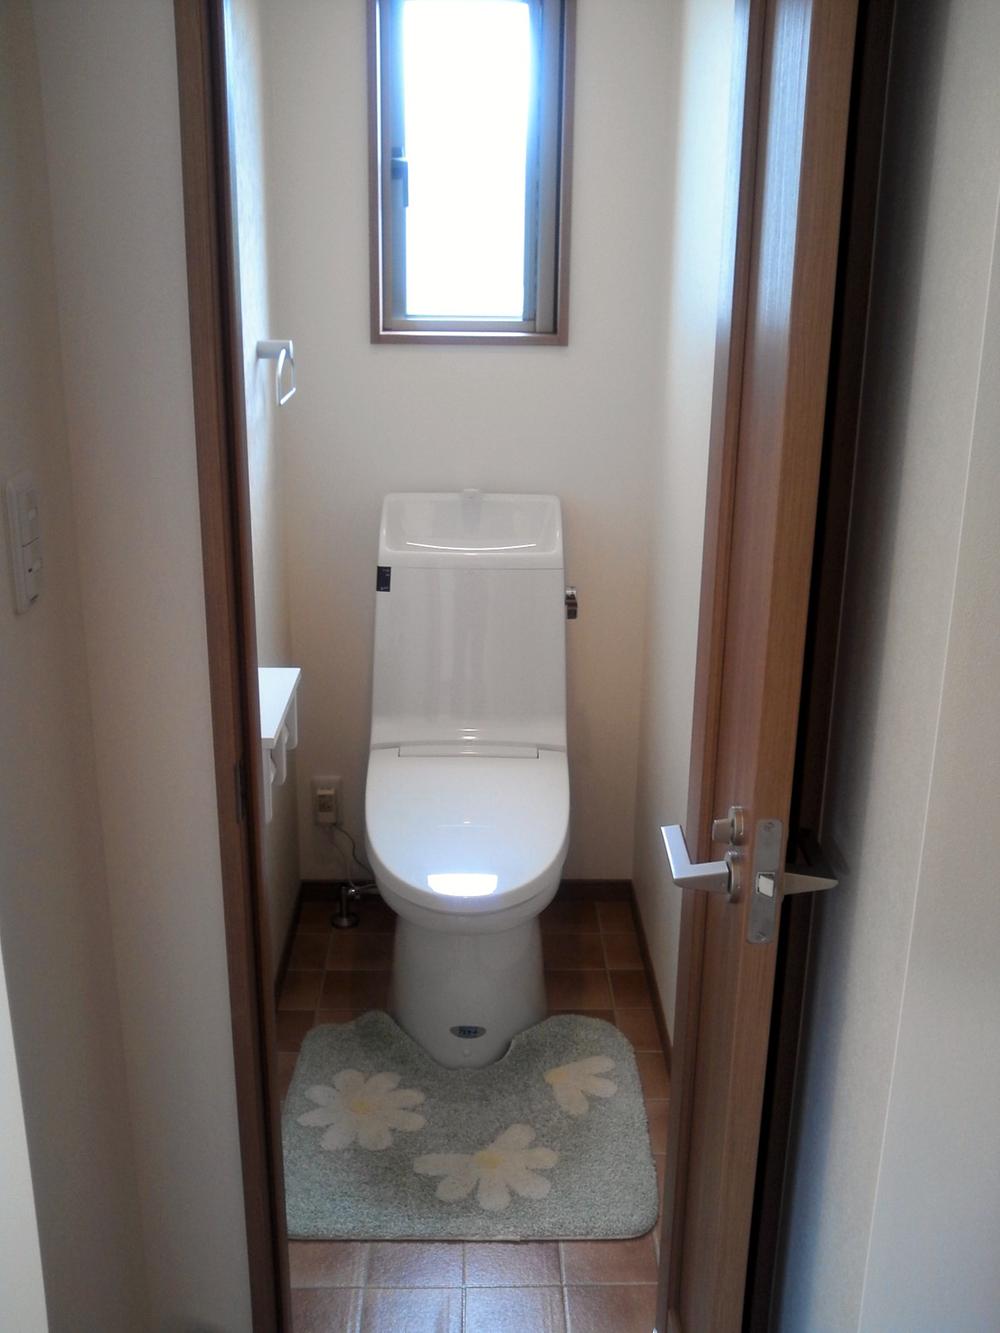 Toilet. Indoor (April 2013) shooting the second floor toilet. 